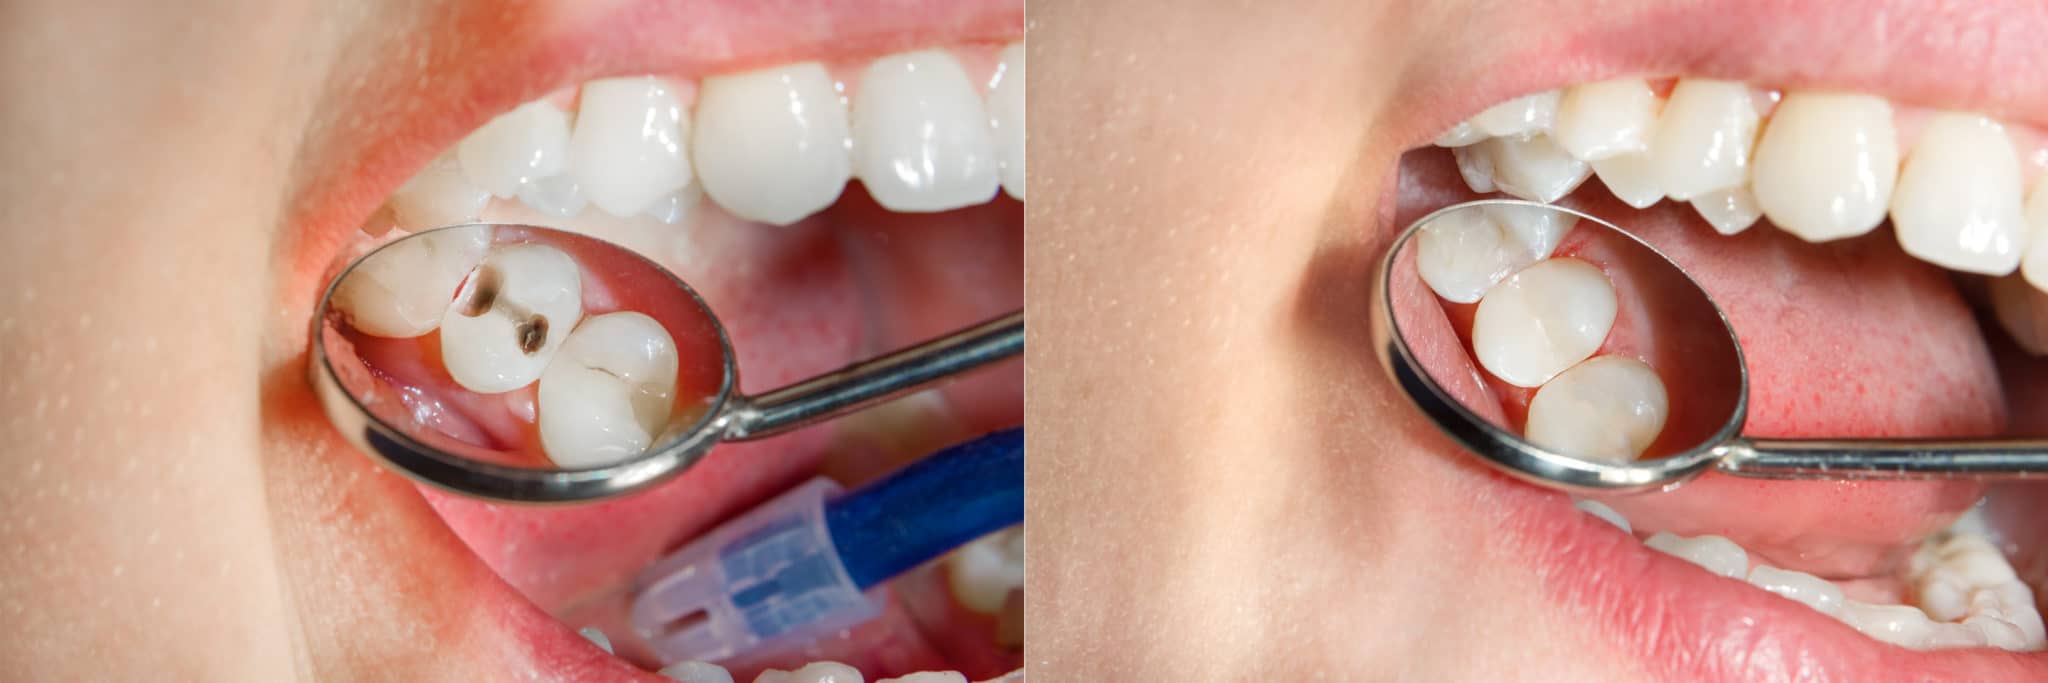 虫歯とは何か、虫歯を治すことはできるのか